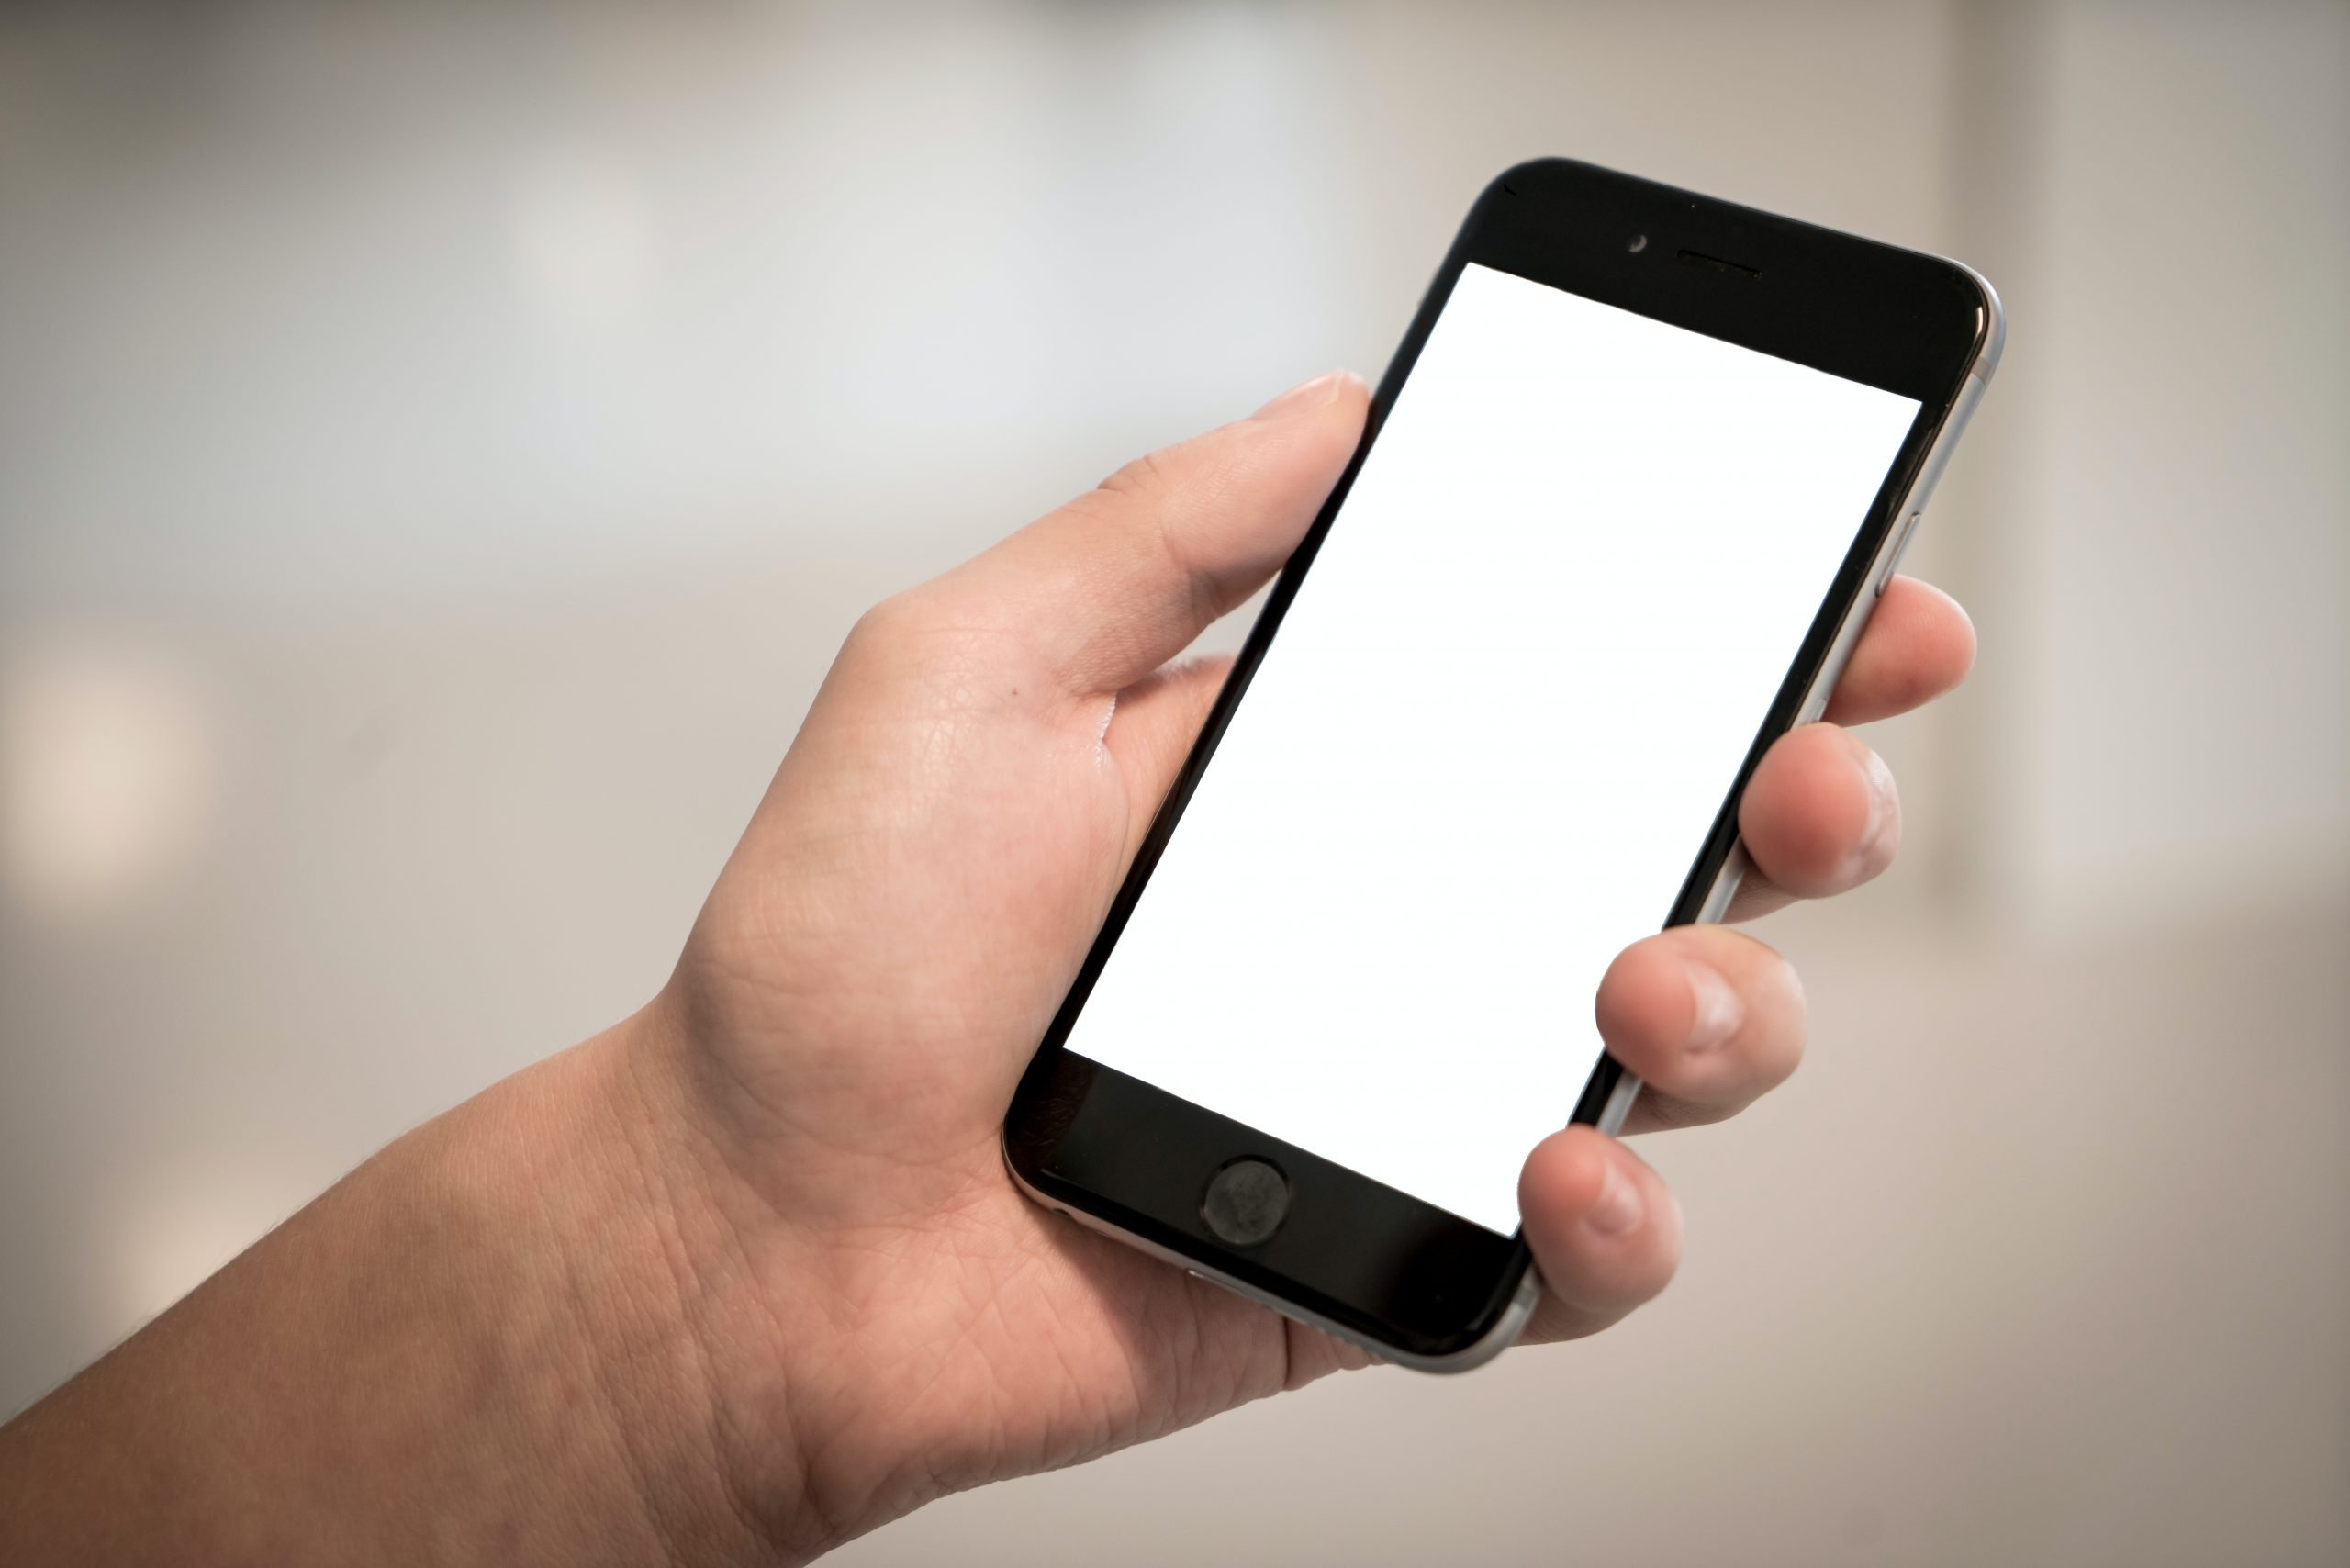 Kumaha Ngunduh Pidéo tina VKontakte kana Android Smartphone sareng iPhone